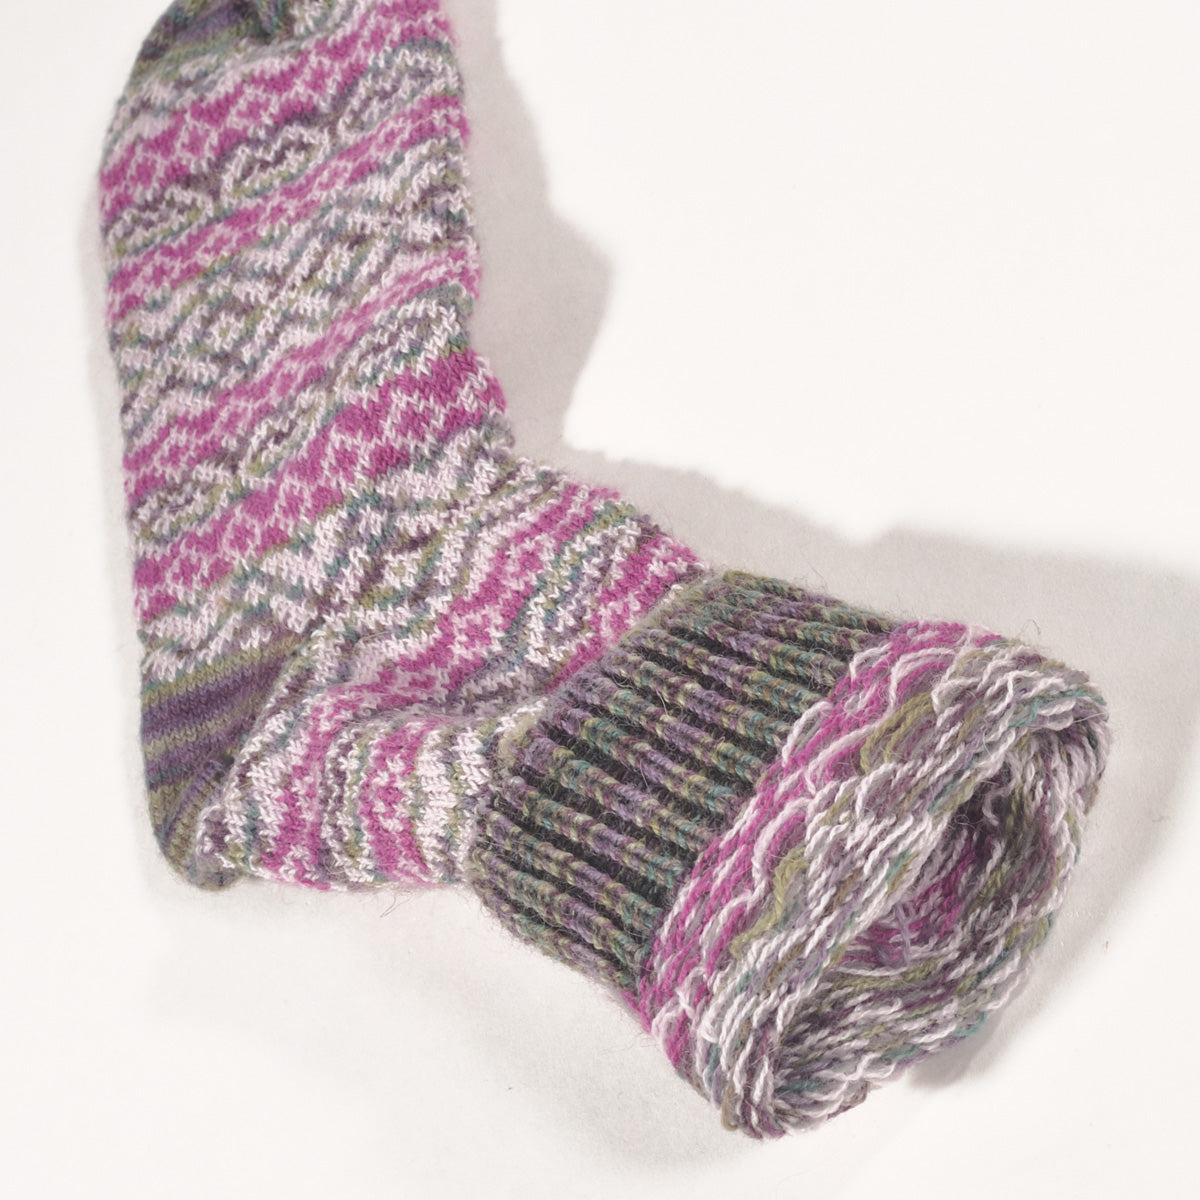 ラナート (LANART) 米国製ベビーアルパカソックス靴下 Artistic Baby Alpaca Socks[MONET/PINK]